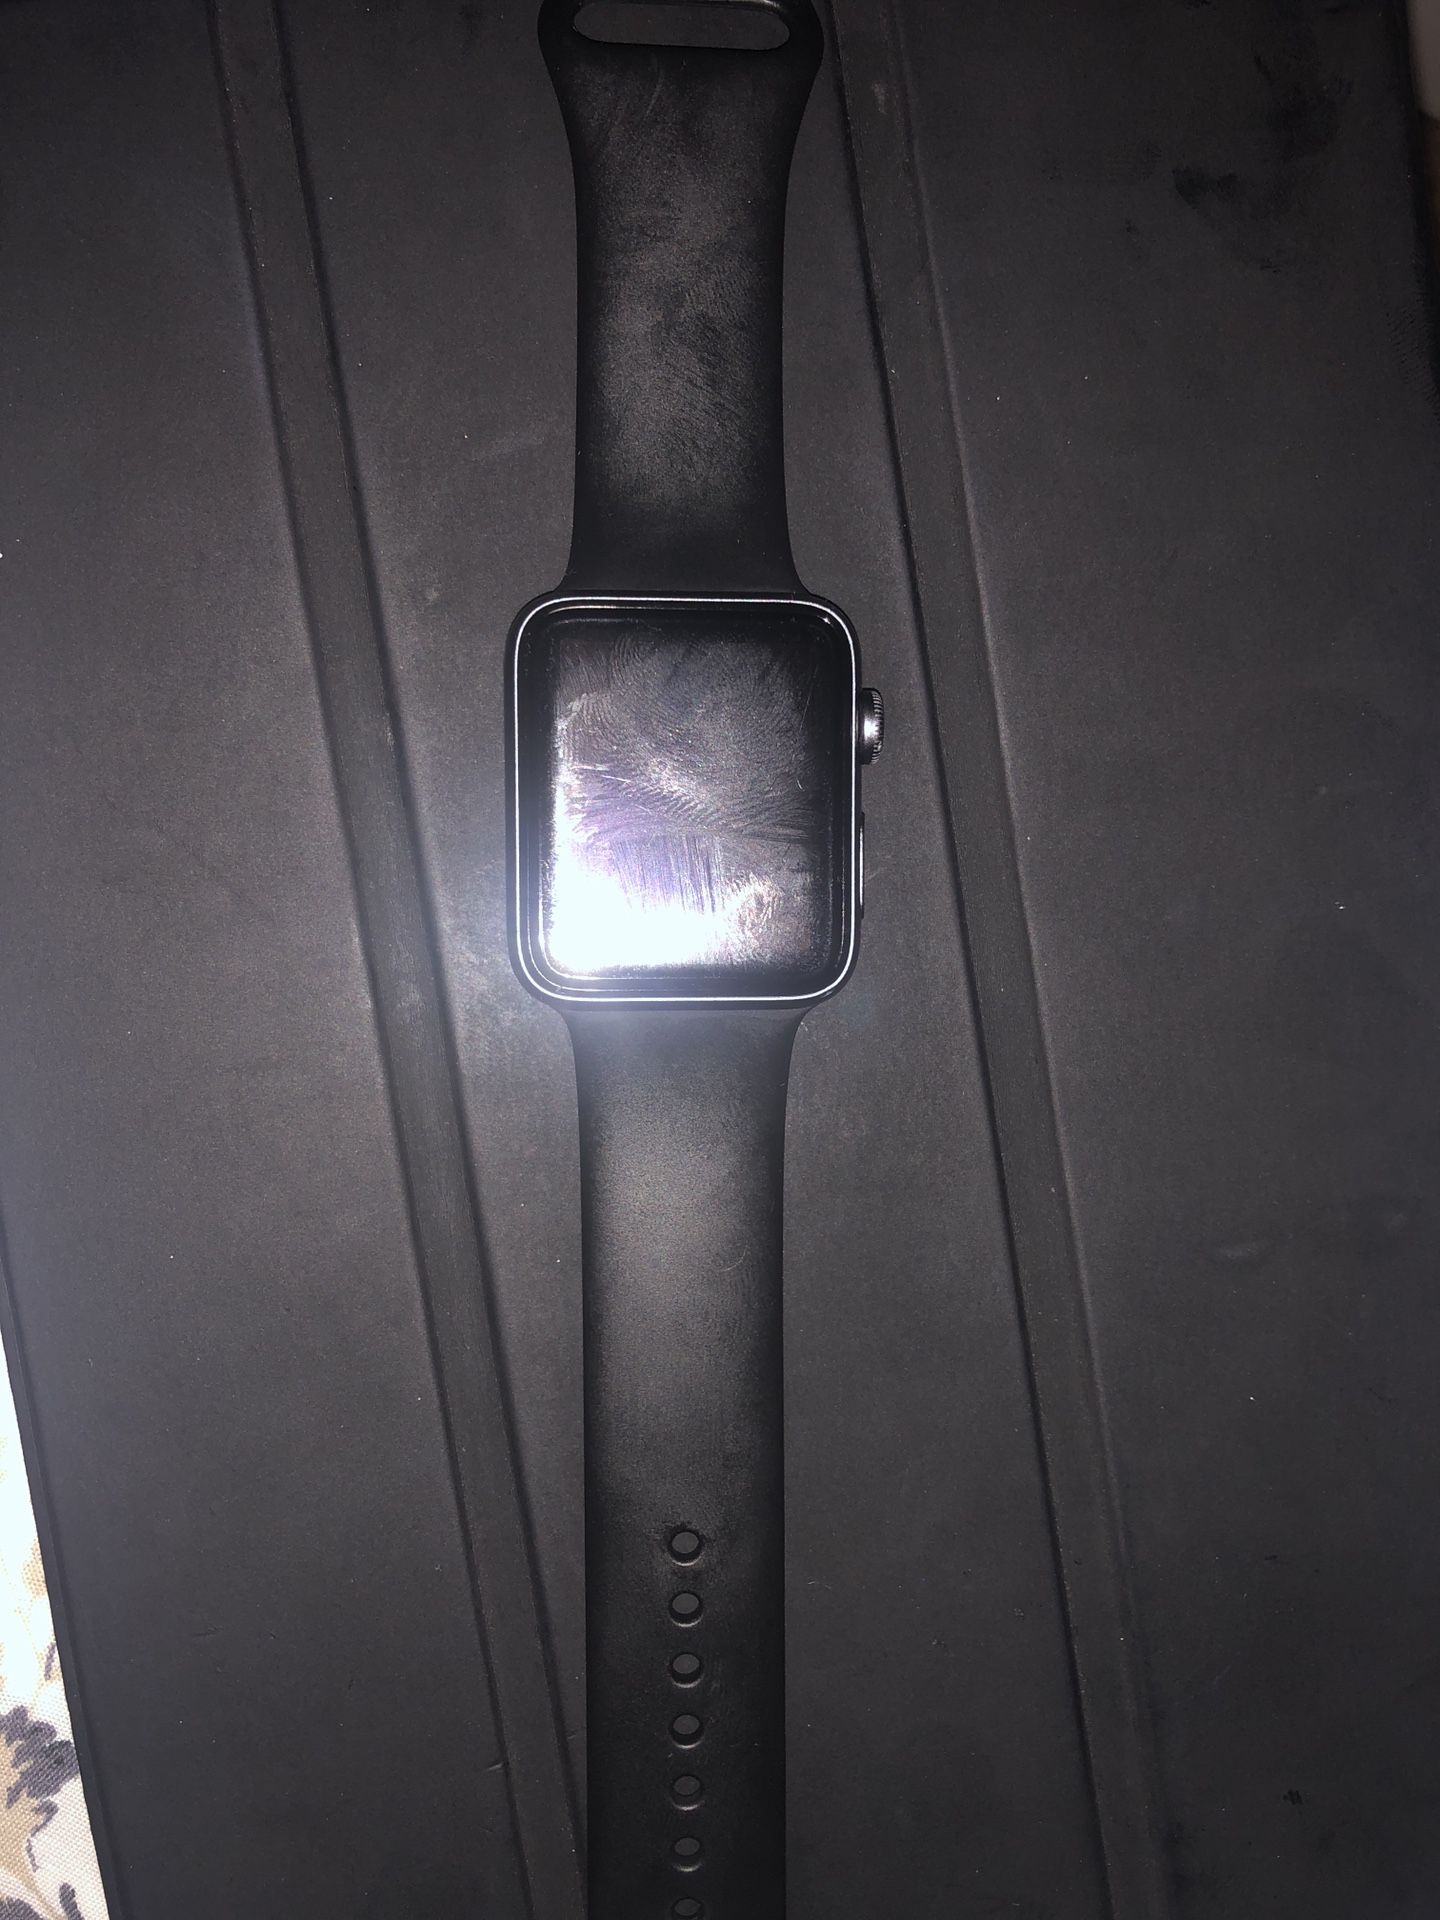 Apple Watch serie 3 iCloud locked